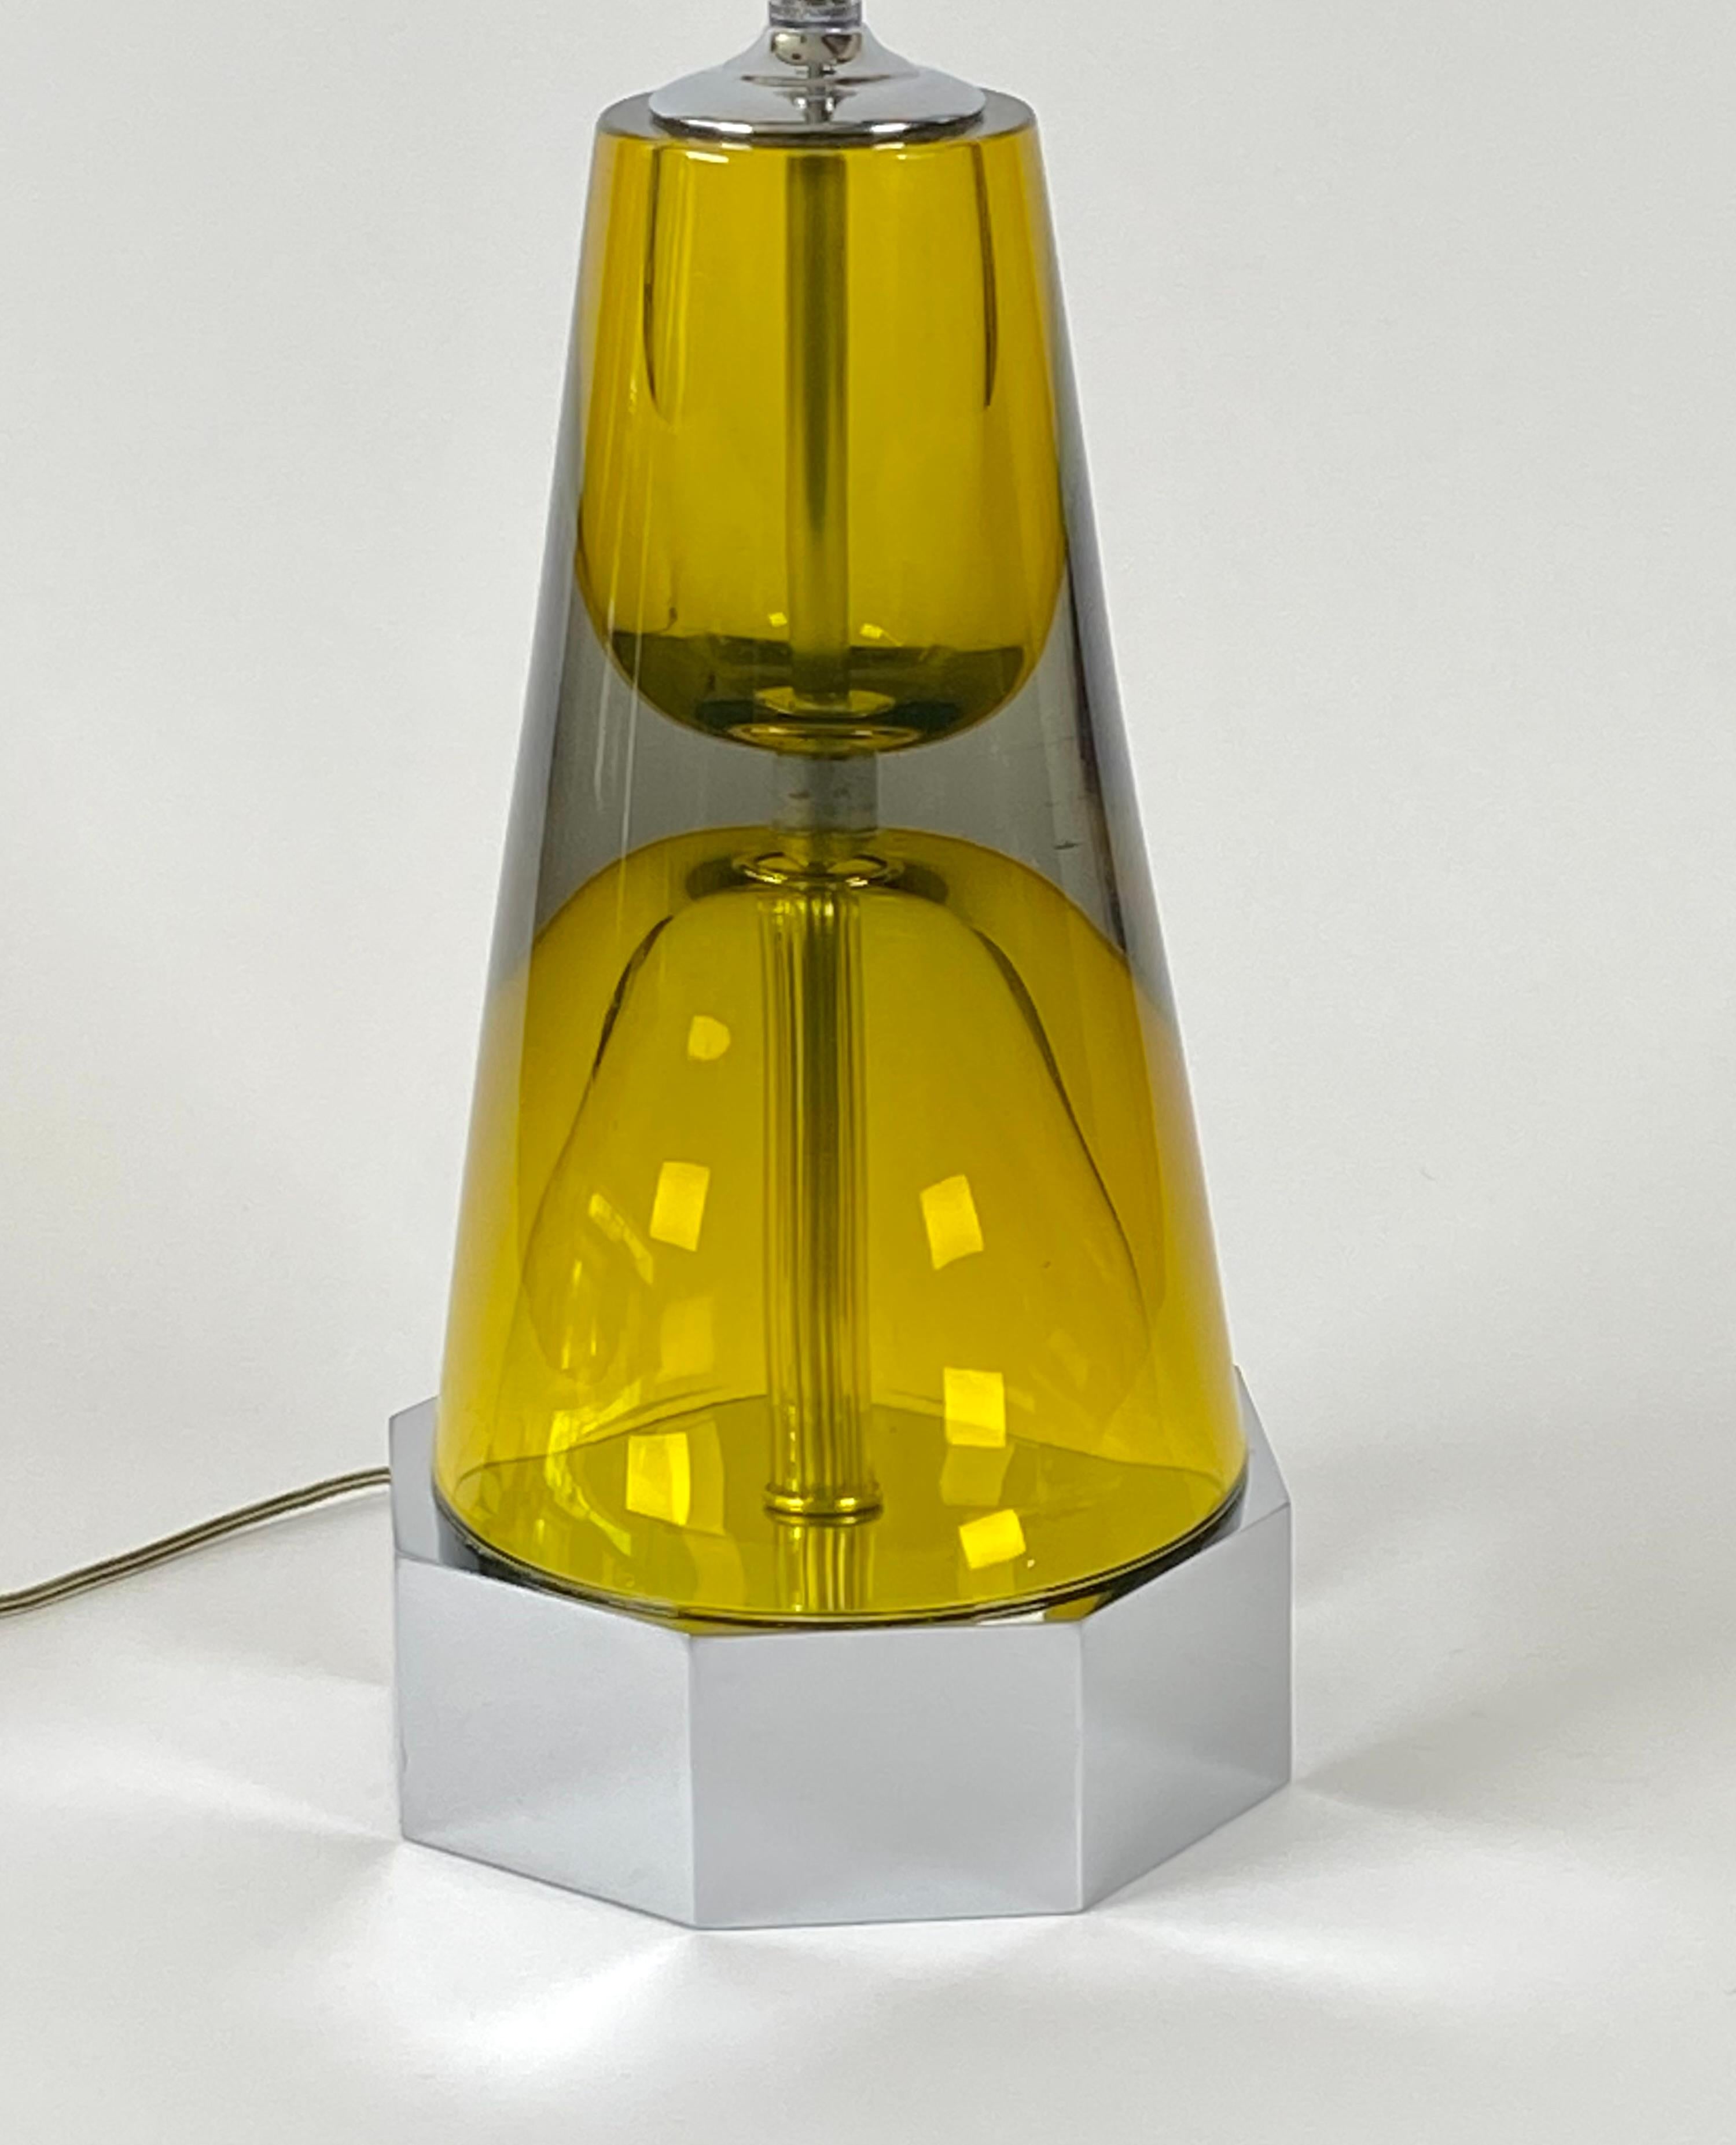 Grande lampe de table en verre de Murano Sommerso avec tous les accessoires chromés d'origine, corps en verre épais de couleur vert ambre reposant sur une base octogonale chromée, avec deux prises à tirette et un interrupteur sur la base. L'épi de